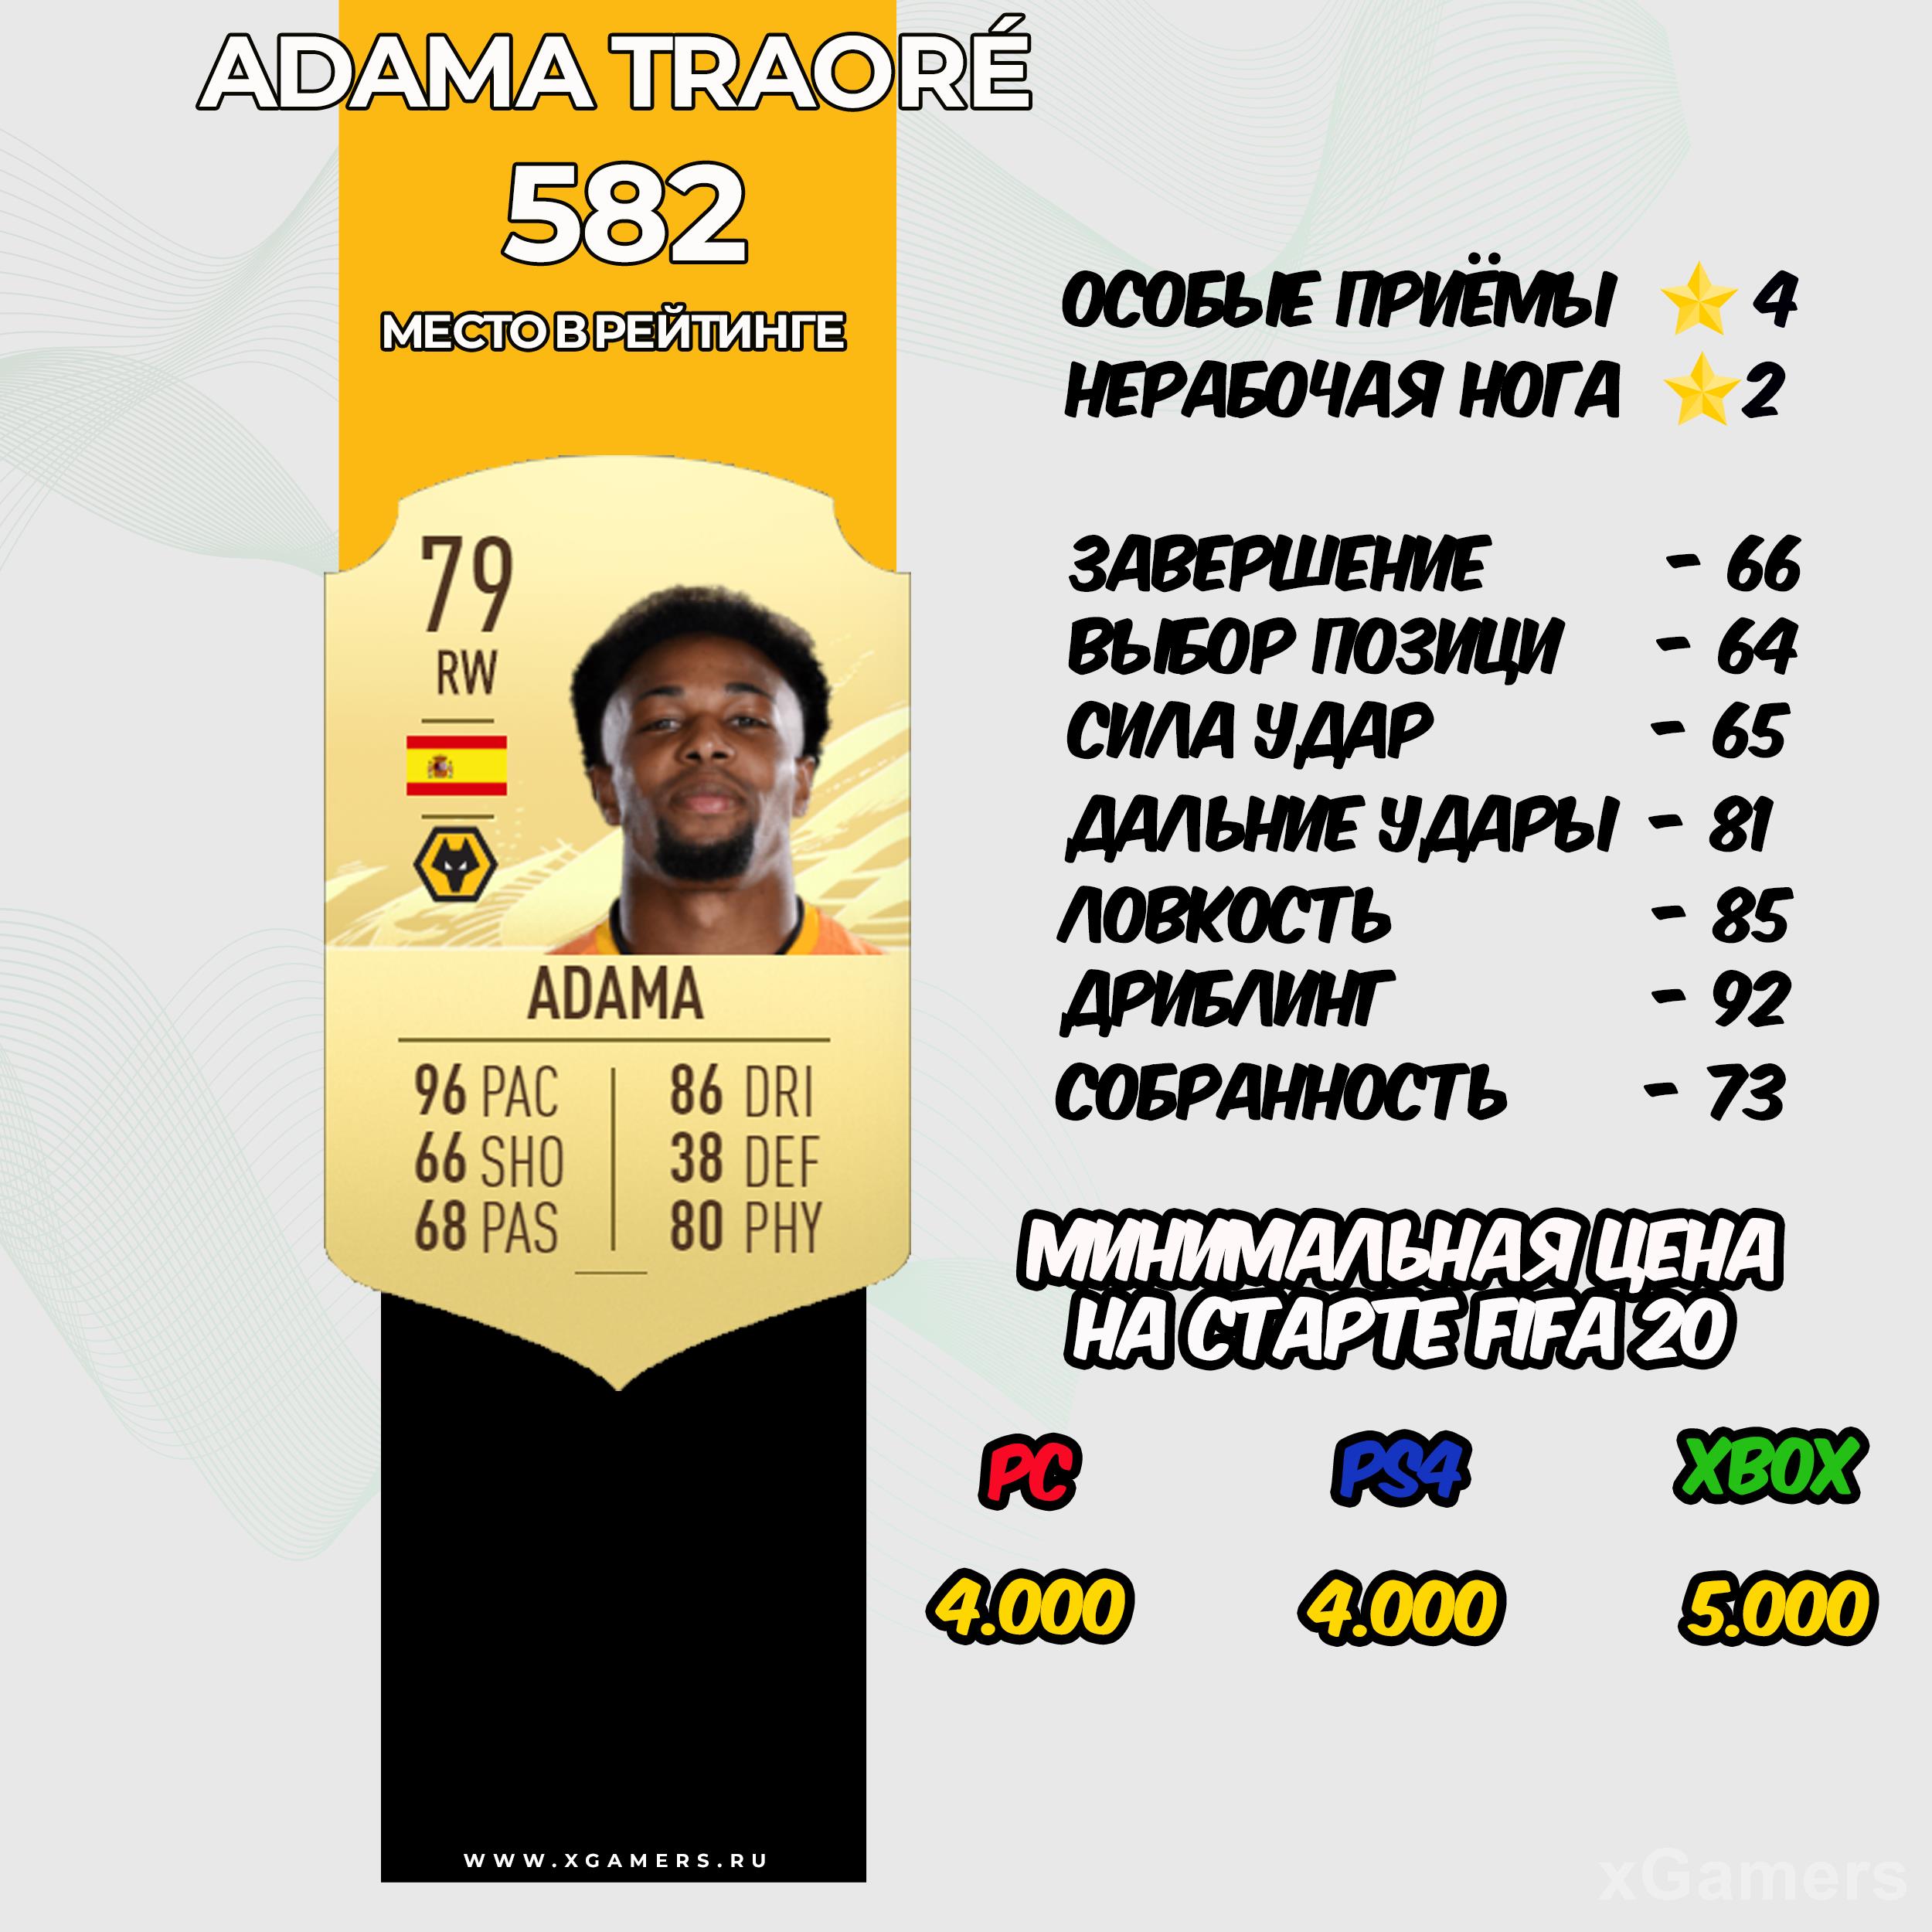 Adama Traoré - место в рейтинге 582